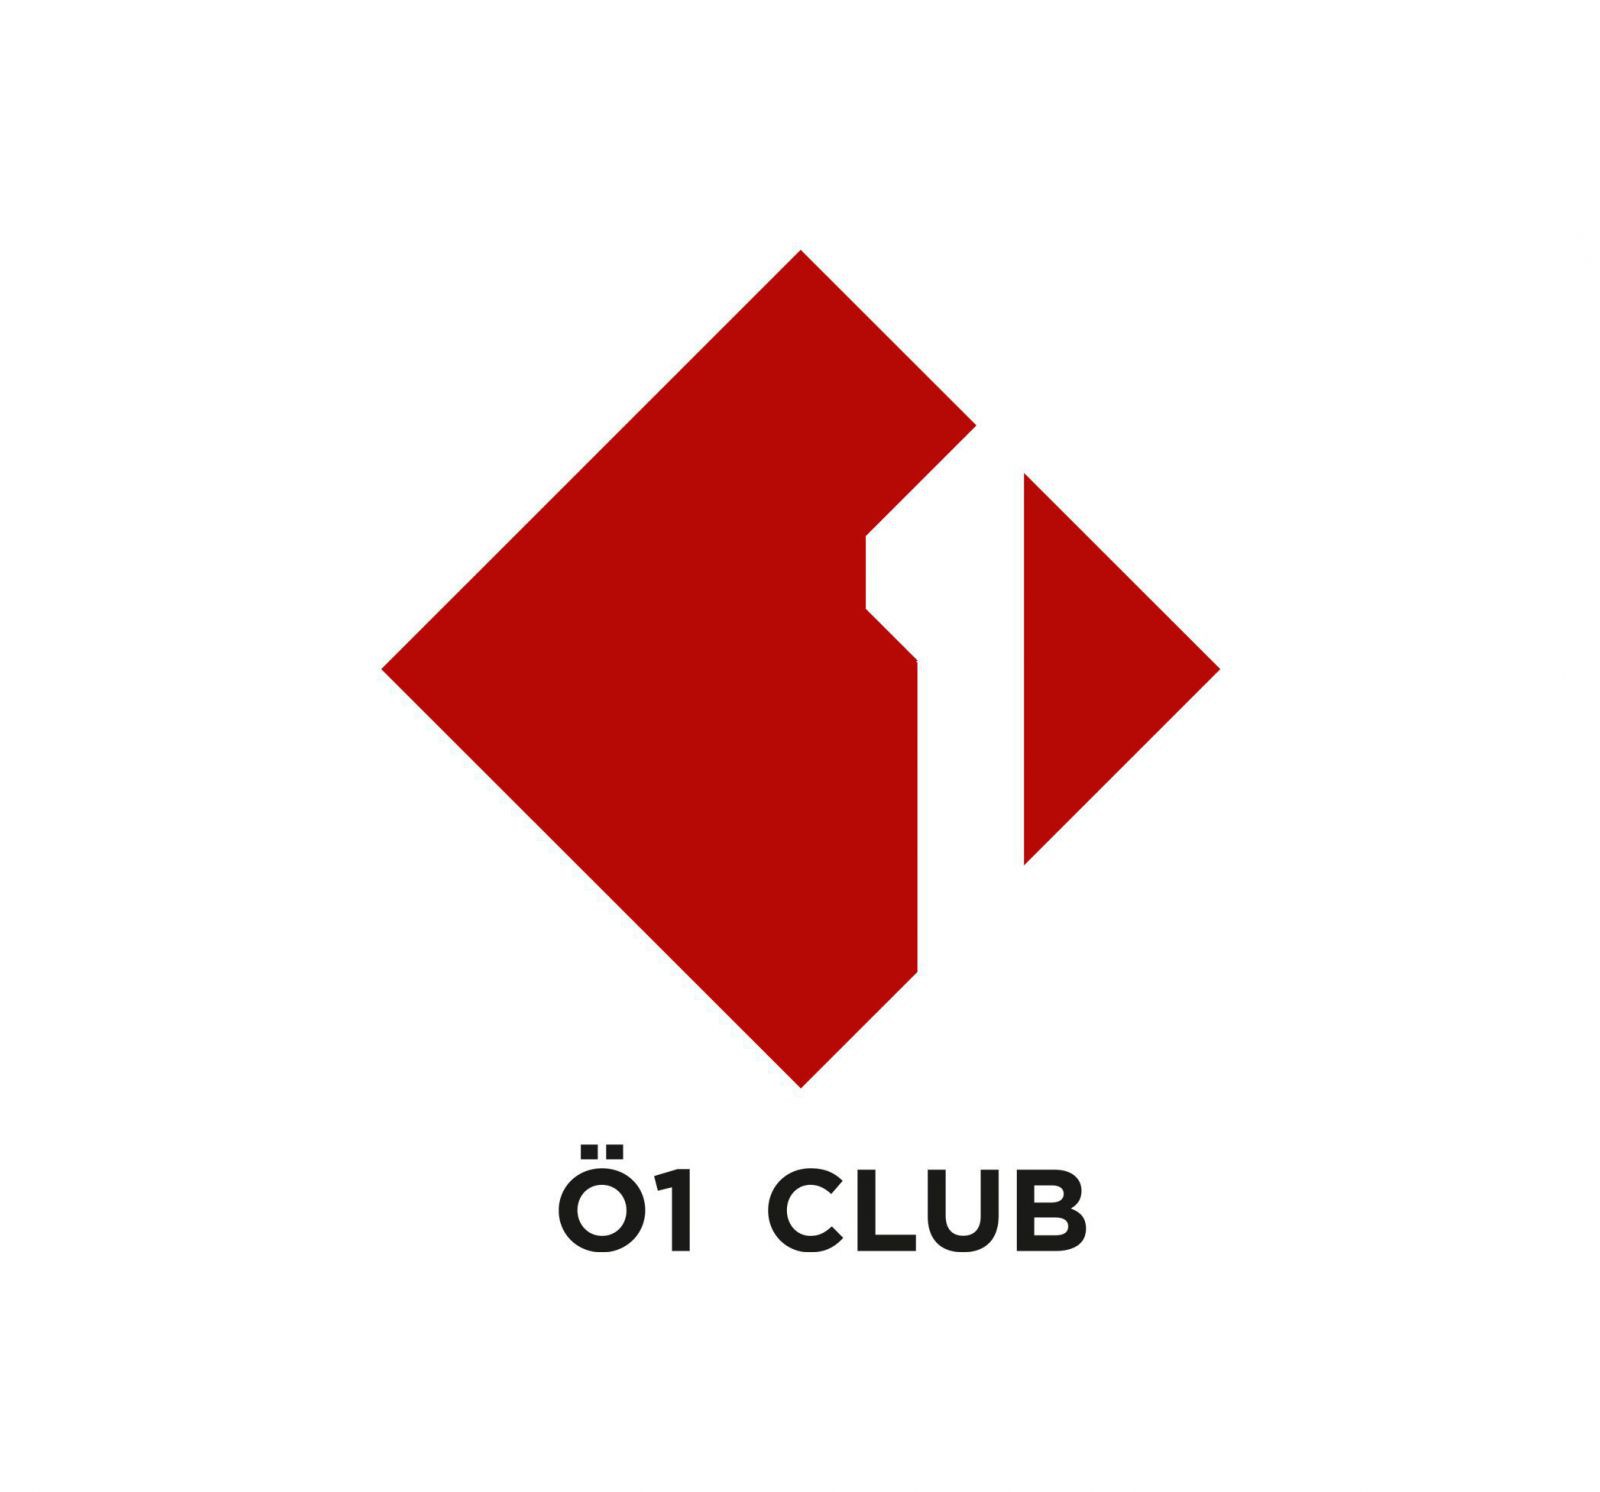 Logo Ö1 Club